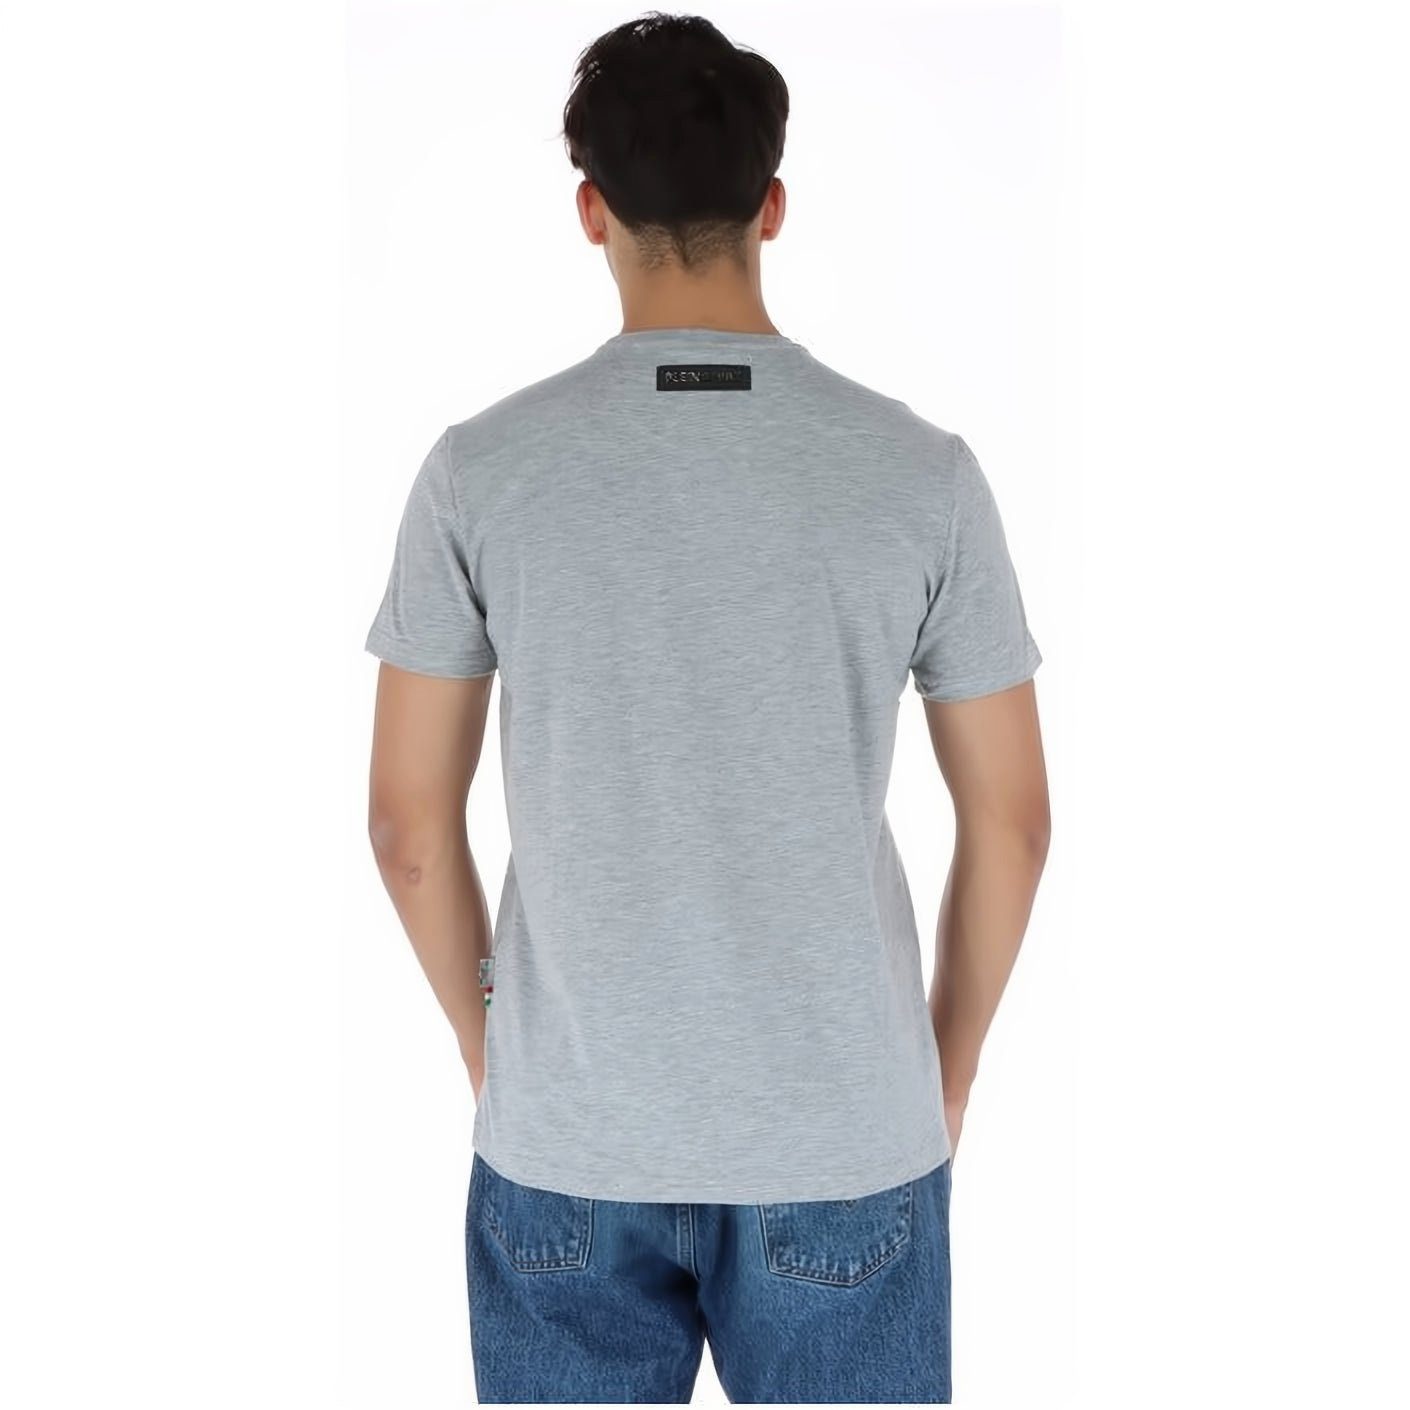 NECK T-Shirt Look, PLEIN SPORT ROUND Farbauswahl vielfältige Tragekomfort, Stylischer hoher